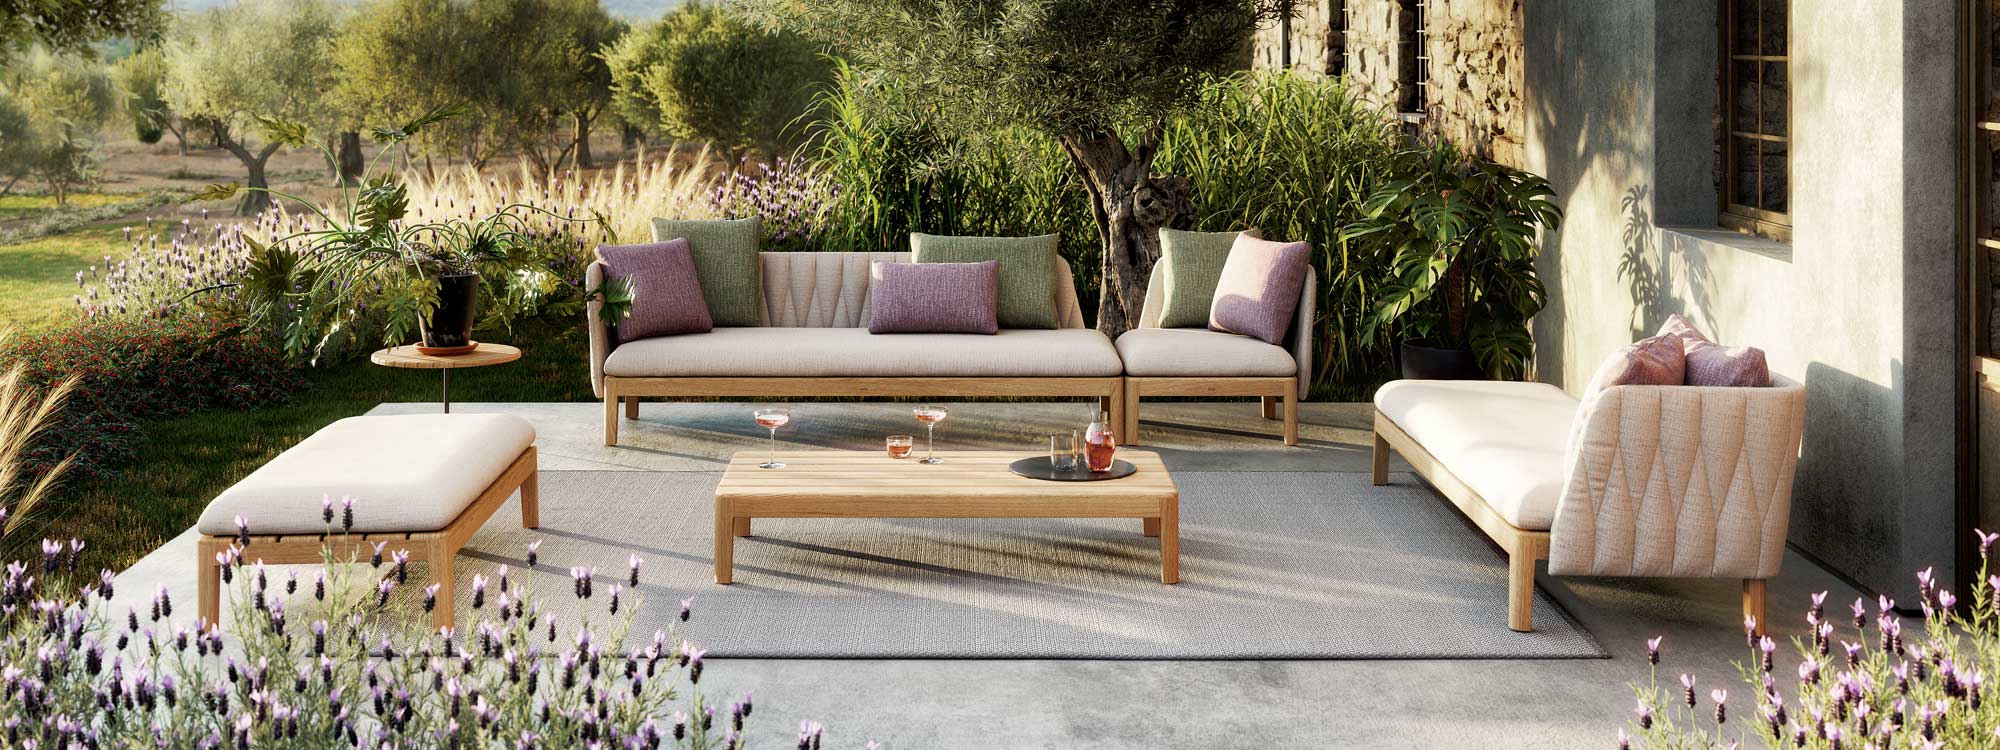 Image of Royal Botania Calypso garden lounge set on terrace surrounded by lush planting